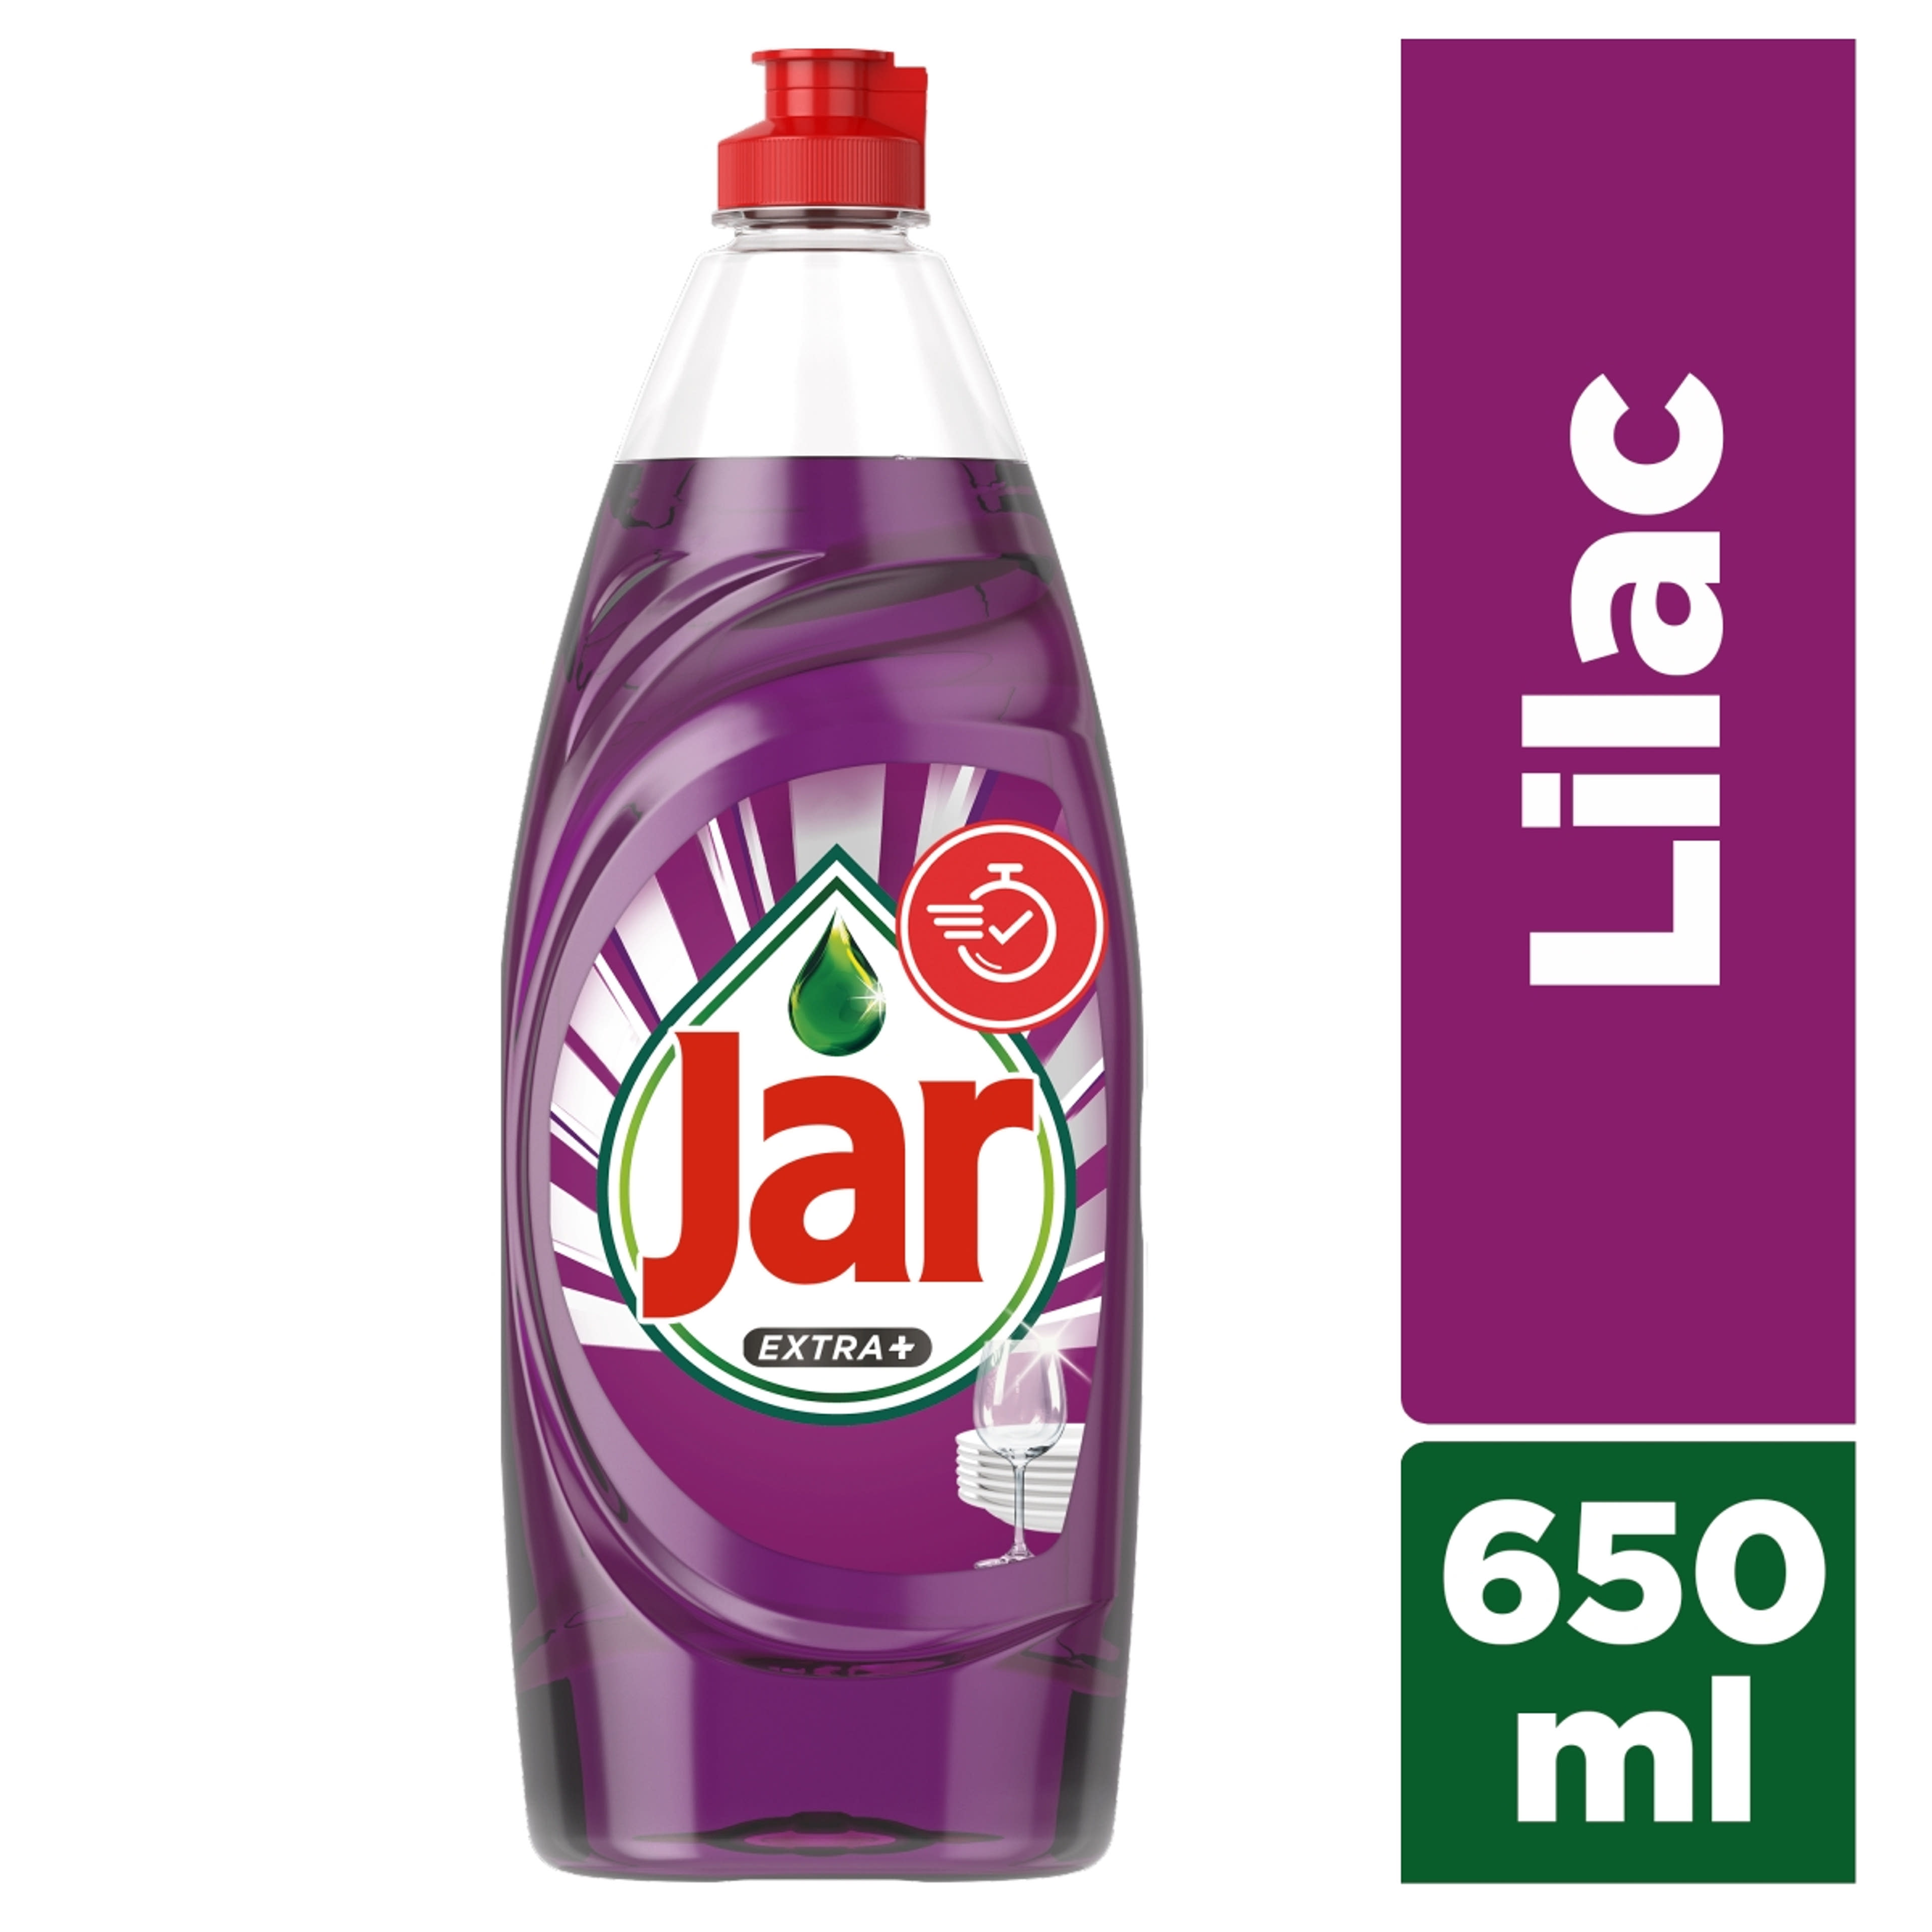 Jar Extra+ mosogatószer, orgona illattal - 650ml-2